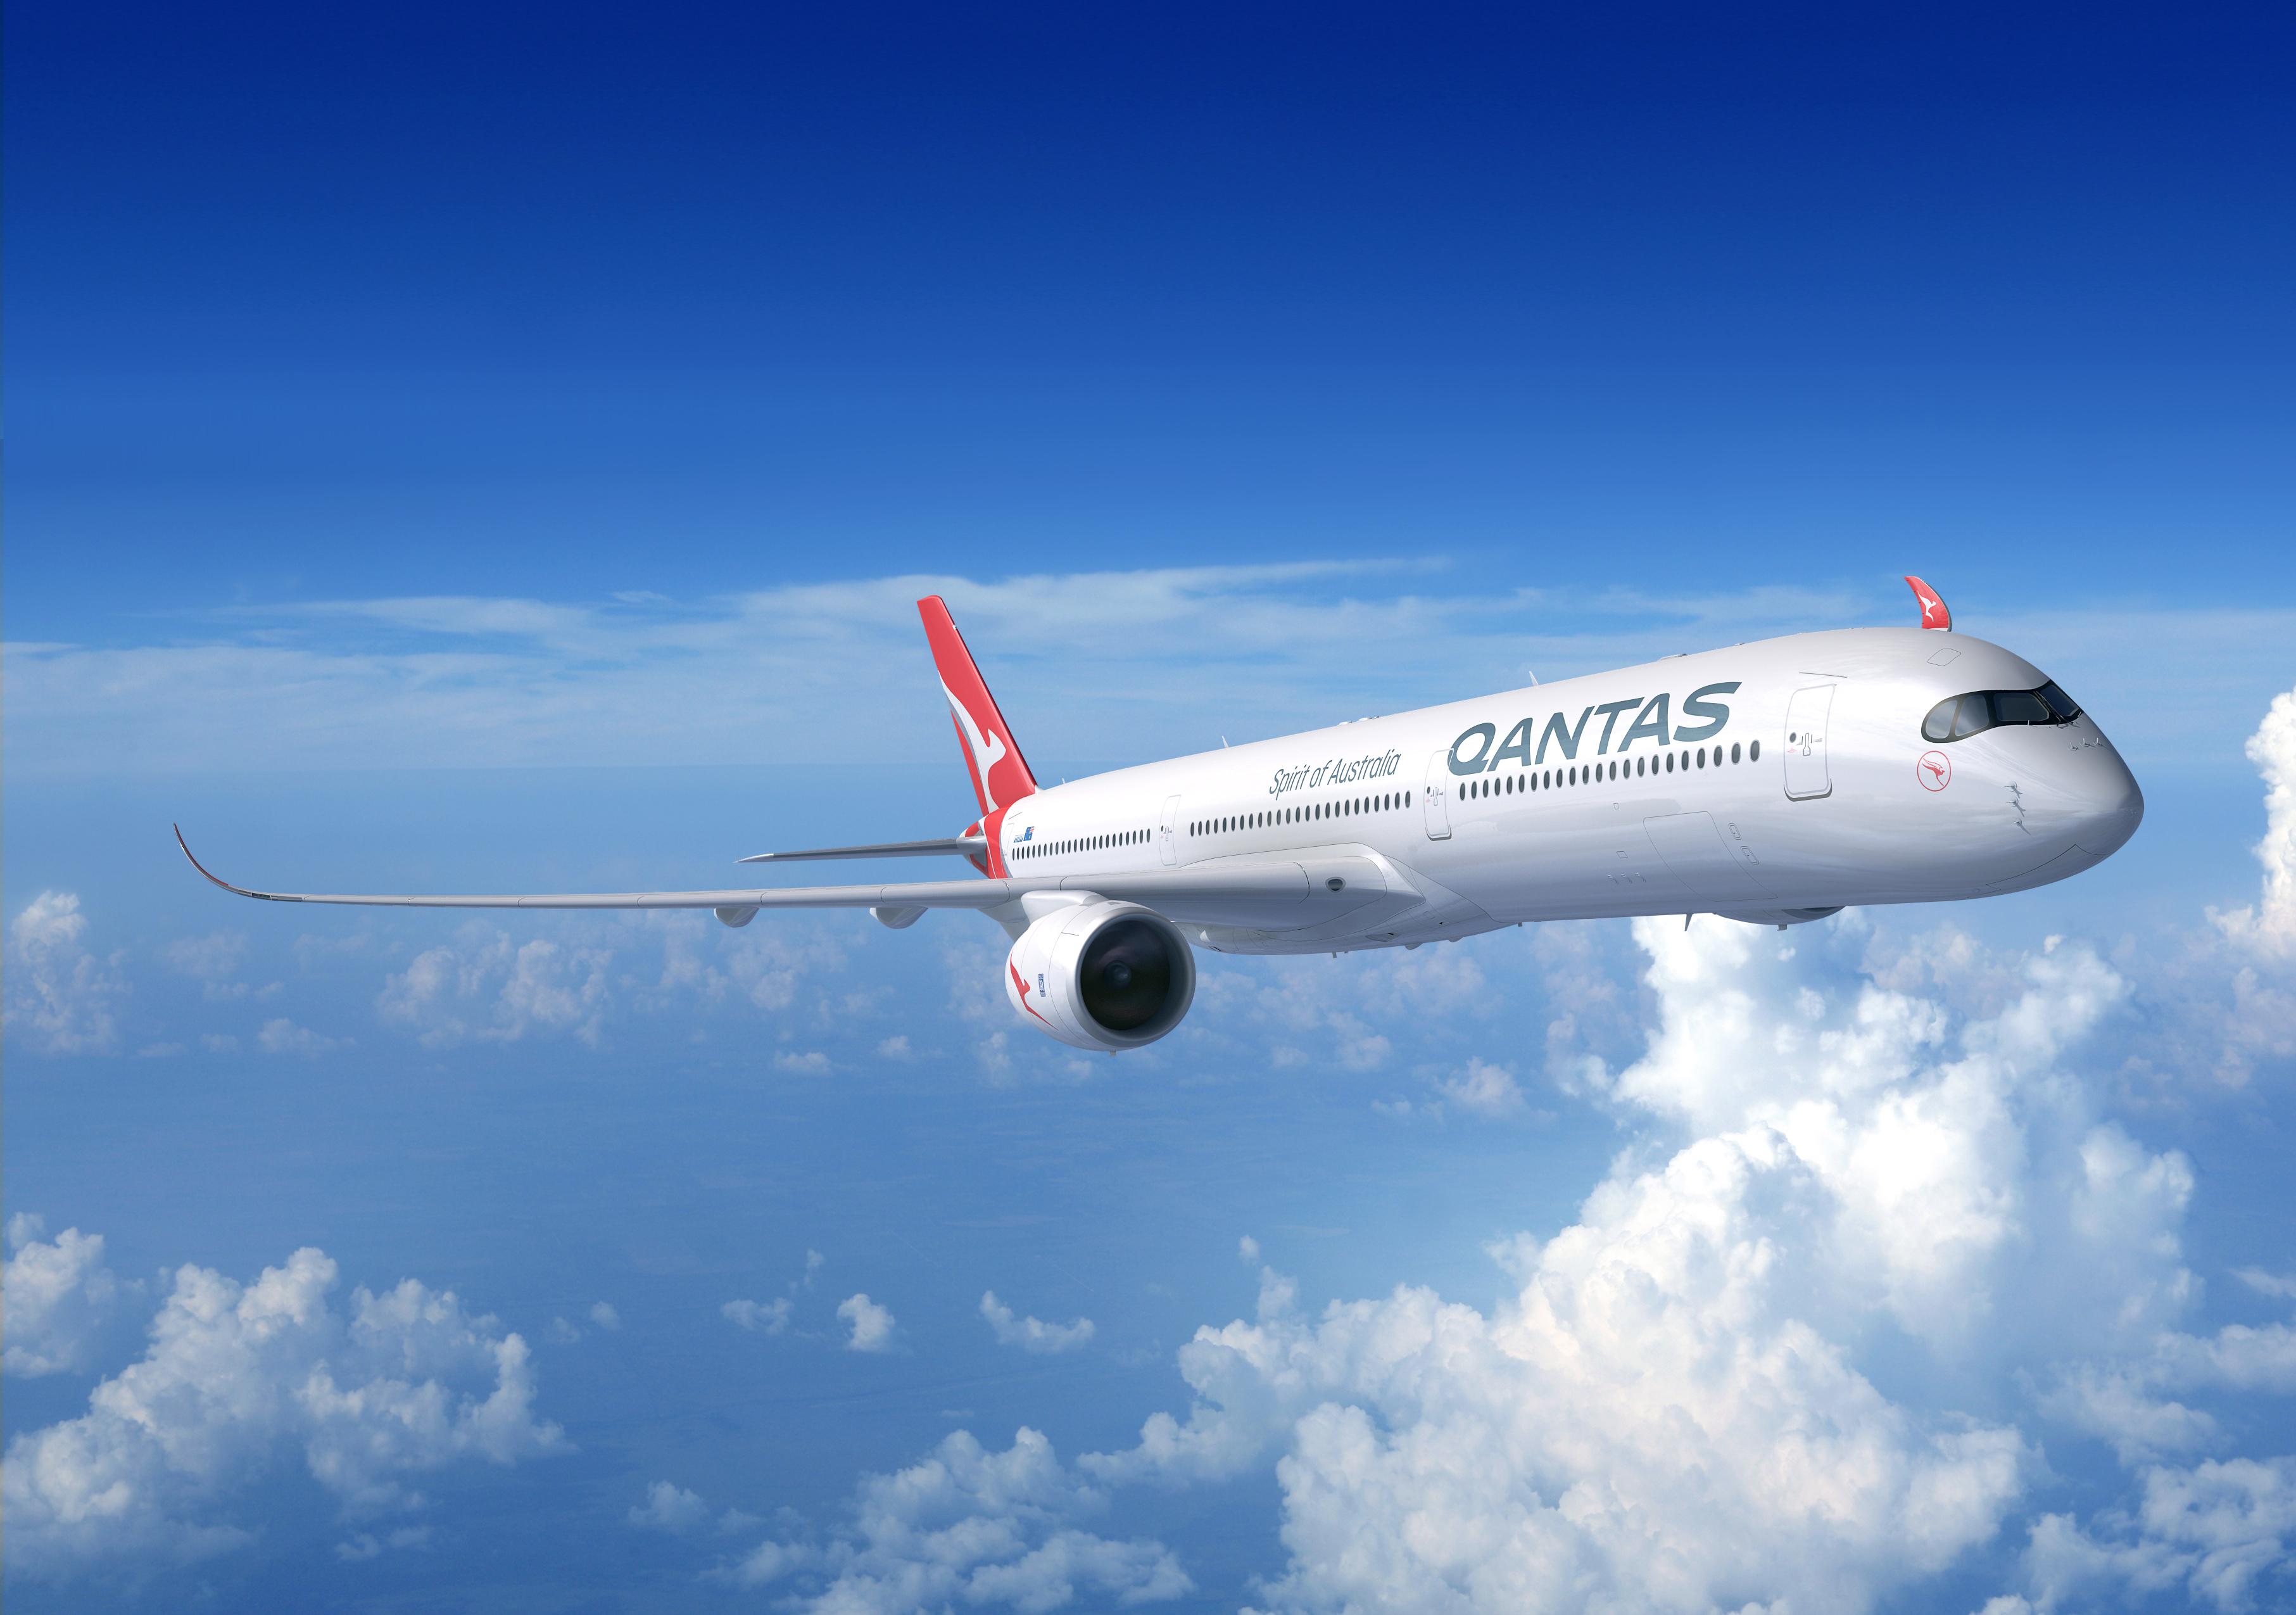 Qantas Airbus A350-1000